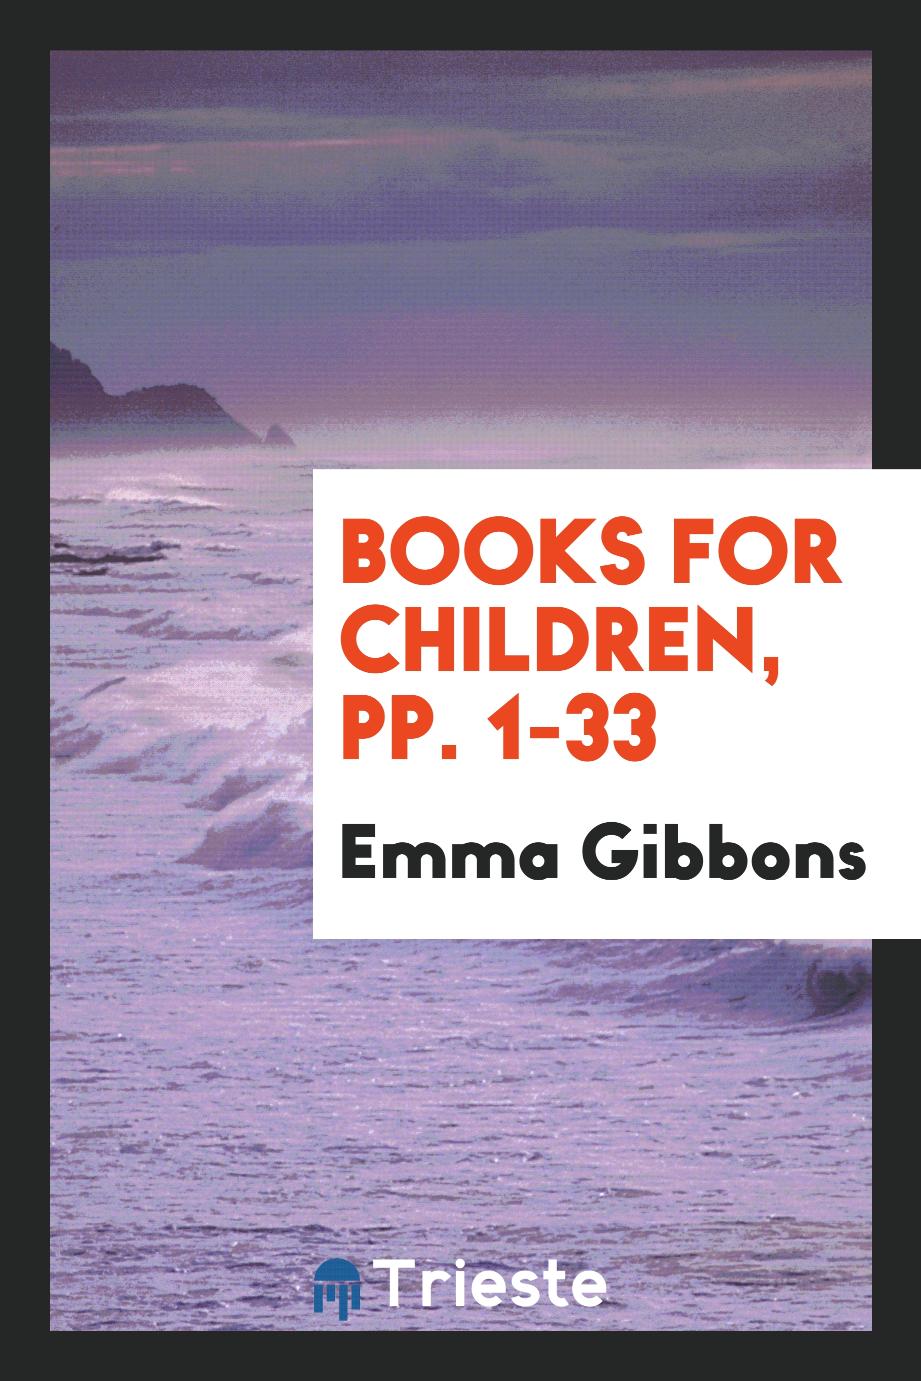 Books for Children, pp. 1-33